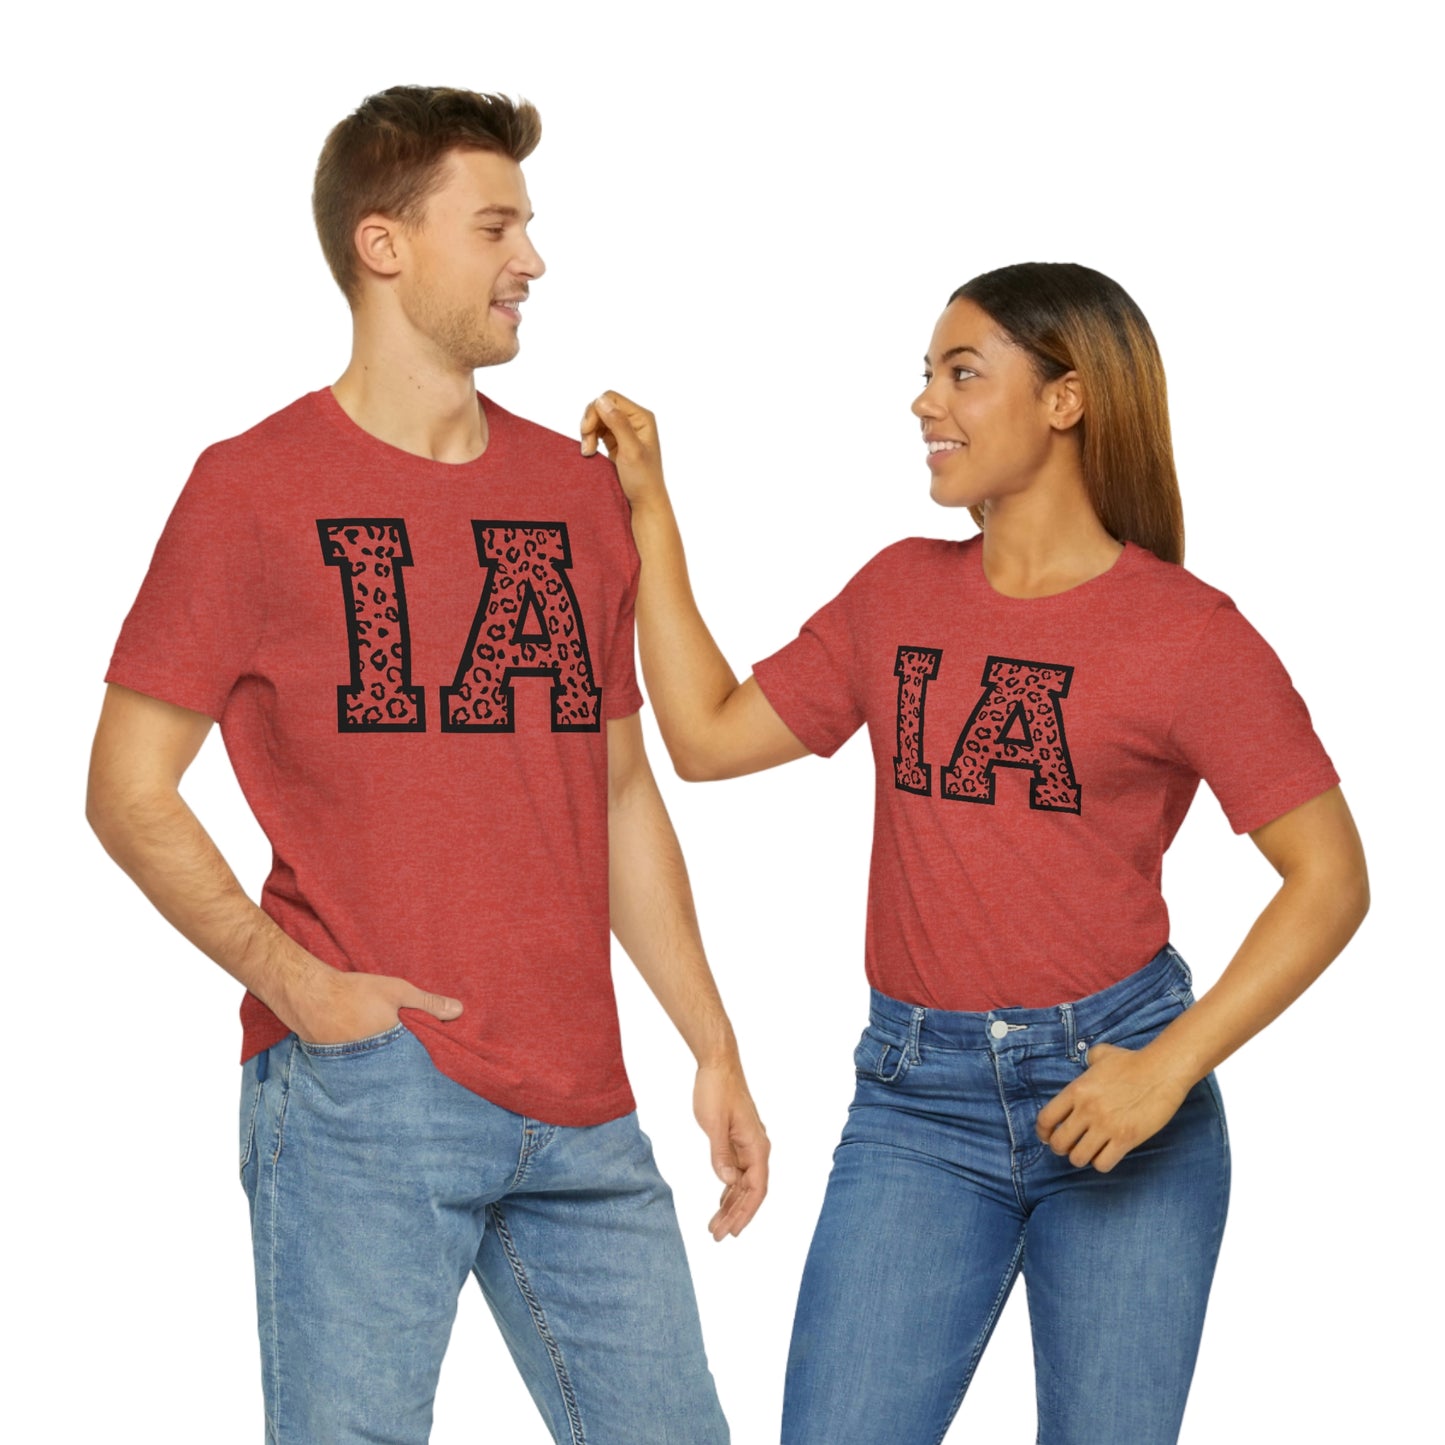 Iowa IA Leopard Print Letters Short Sleeve T-shirt